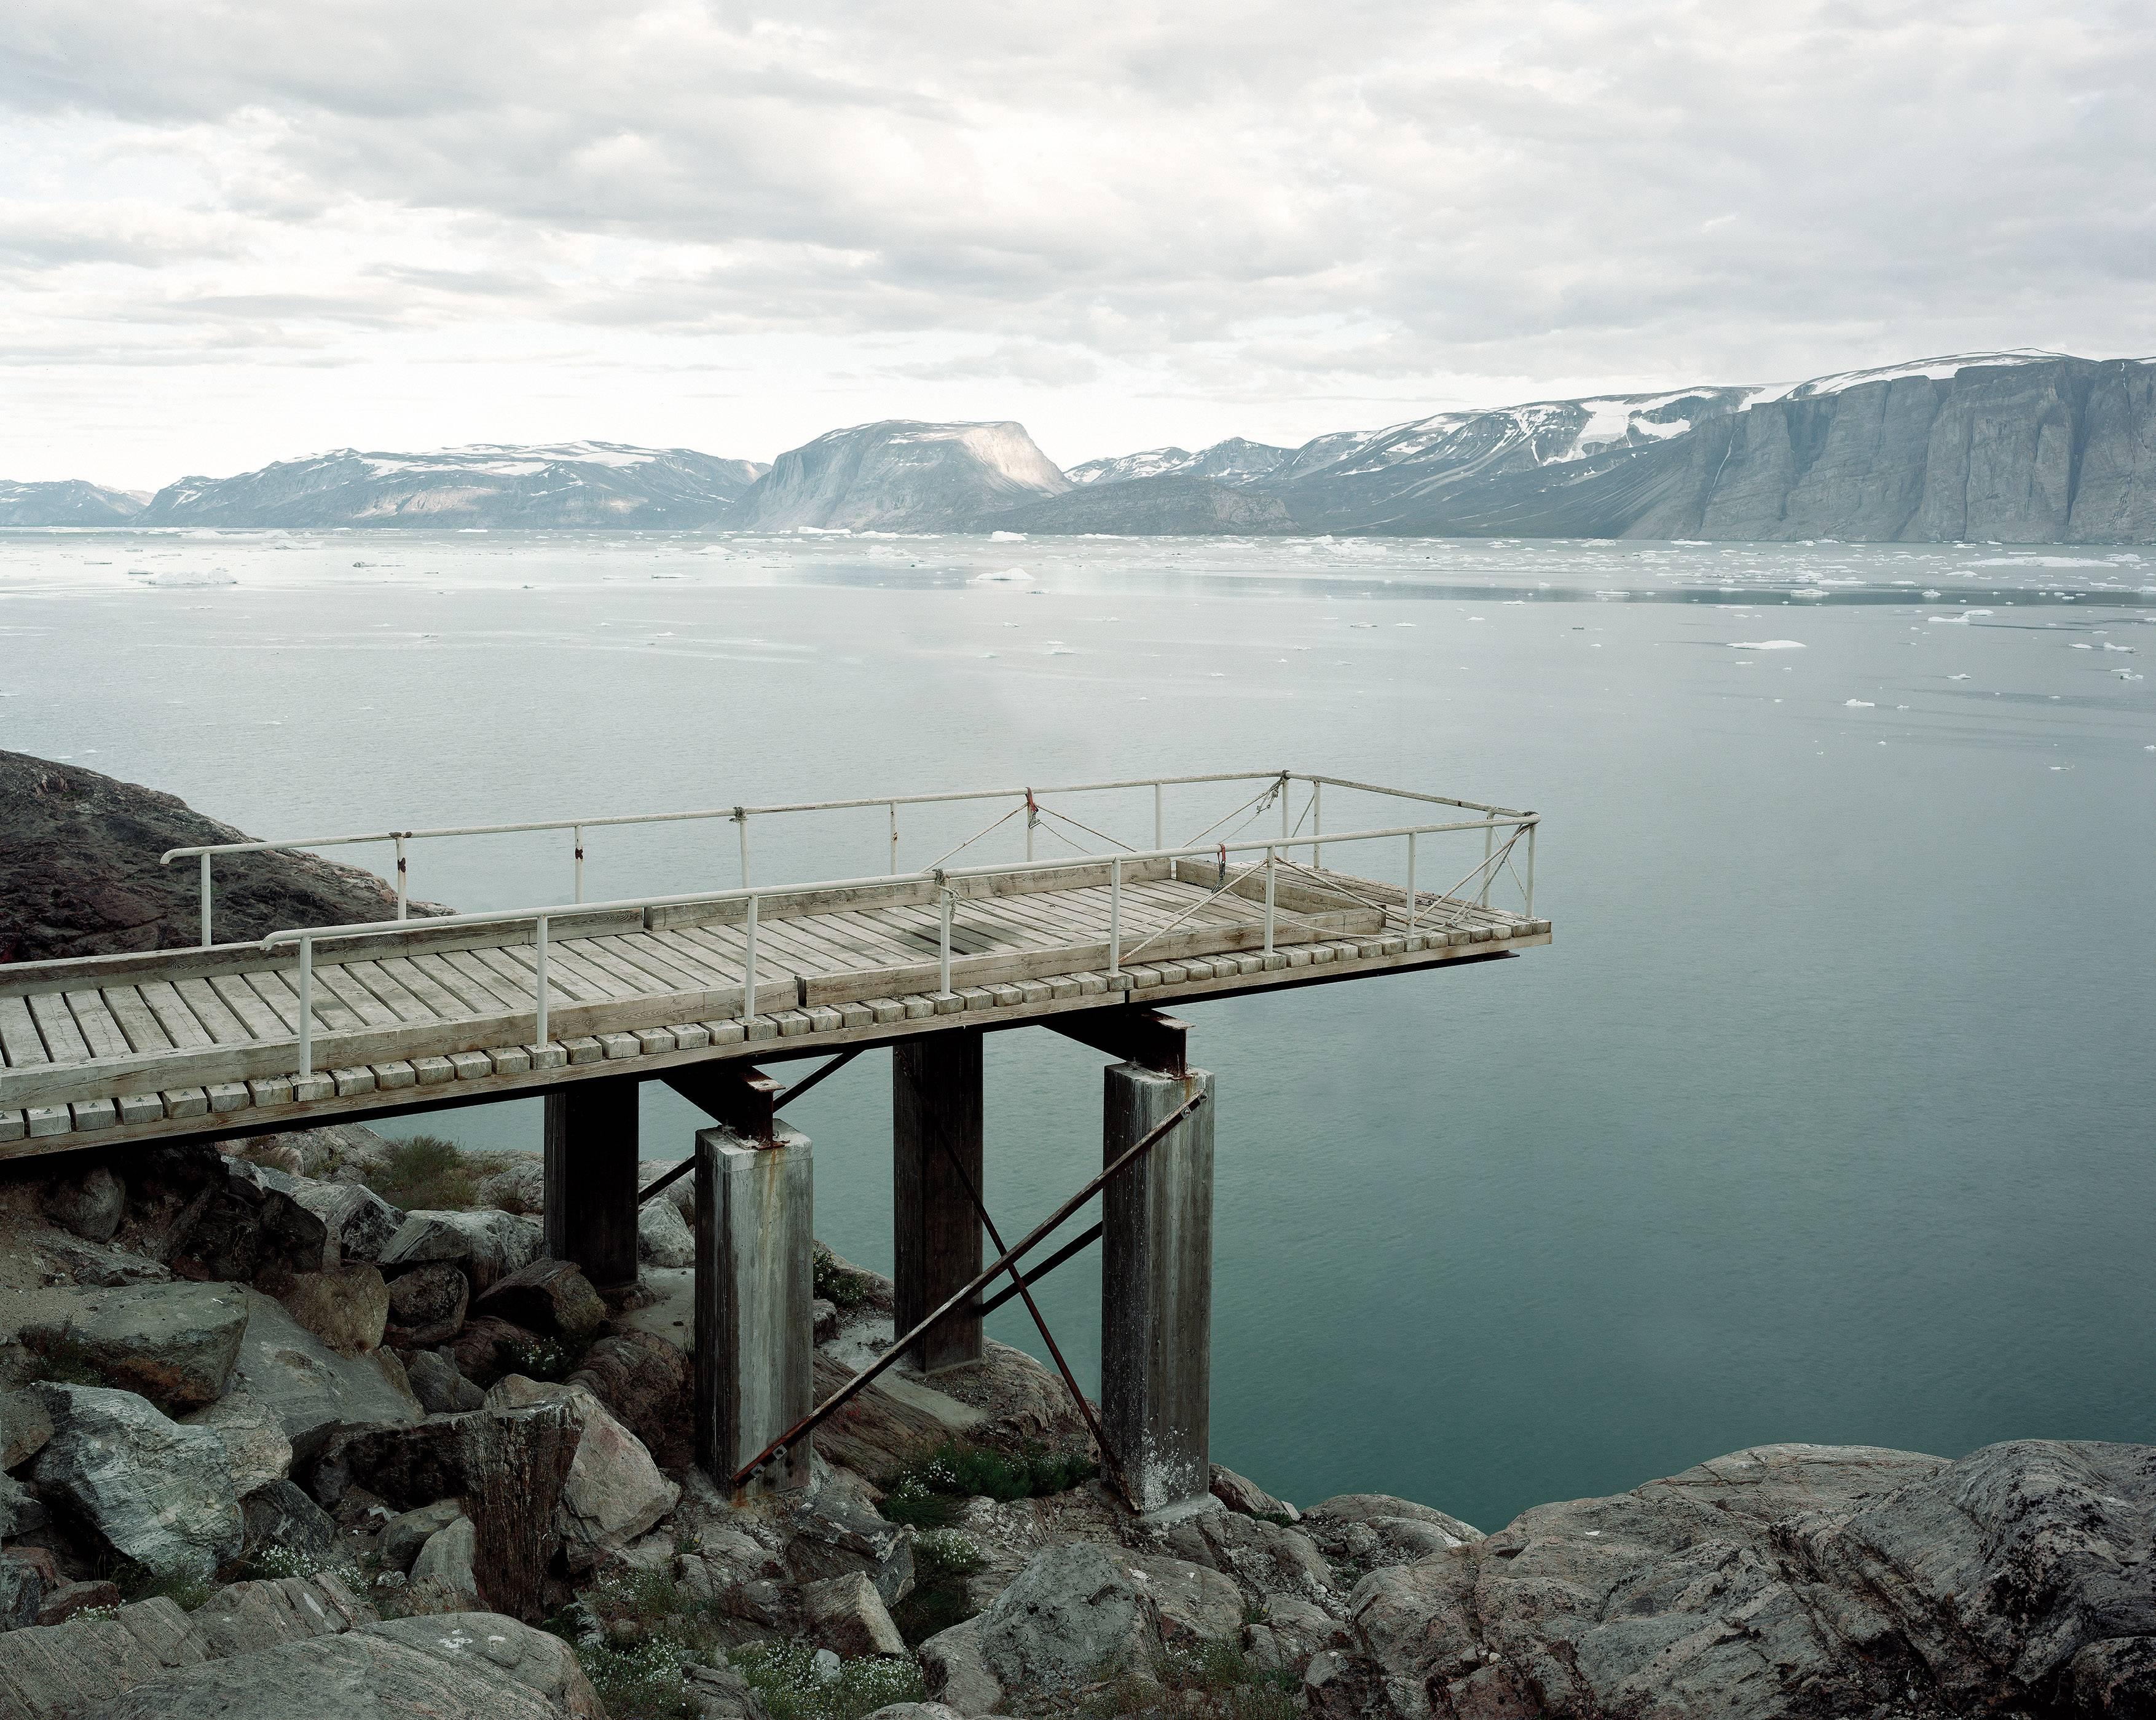 Ikerasak, Qarajaqs Eisfjord 2 - Olaf Otto Becker (Landschaftsfotografie in Farbe)
Signiert auf der Rückseite
Archivierungs-Pigmentdruck

Erhältlich in drei Größen:
25 x 29,5 Zoll, aus einer Auflage von fünf Stück
45.5 x 54,5 Zoll, aus einer Auflage